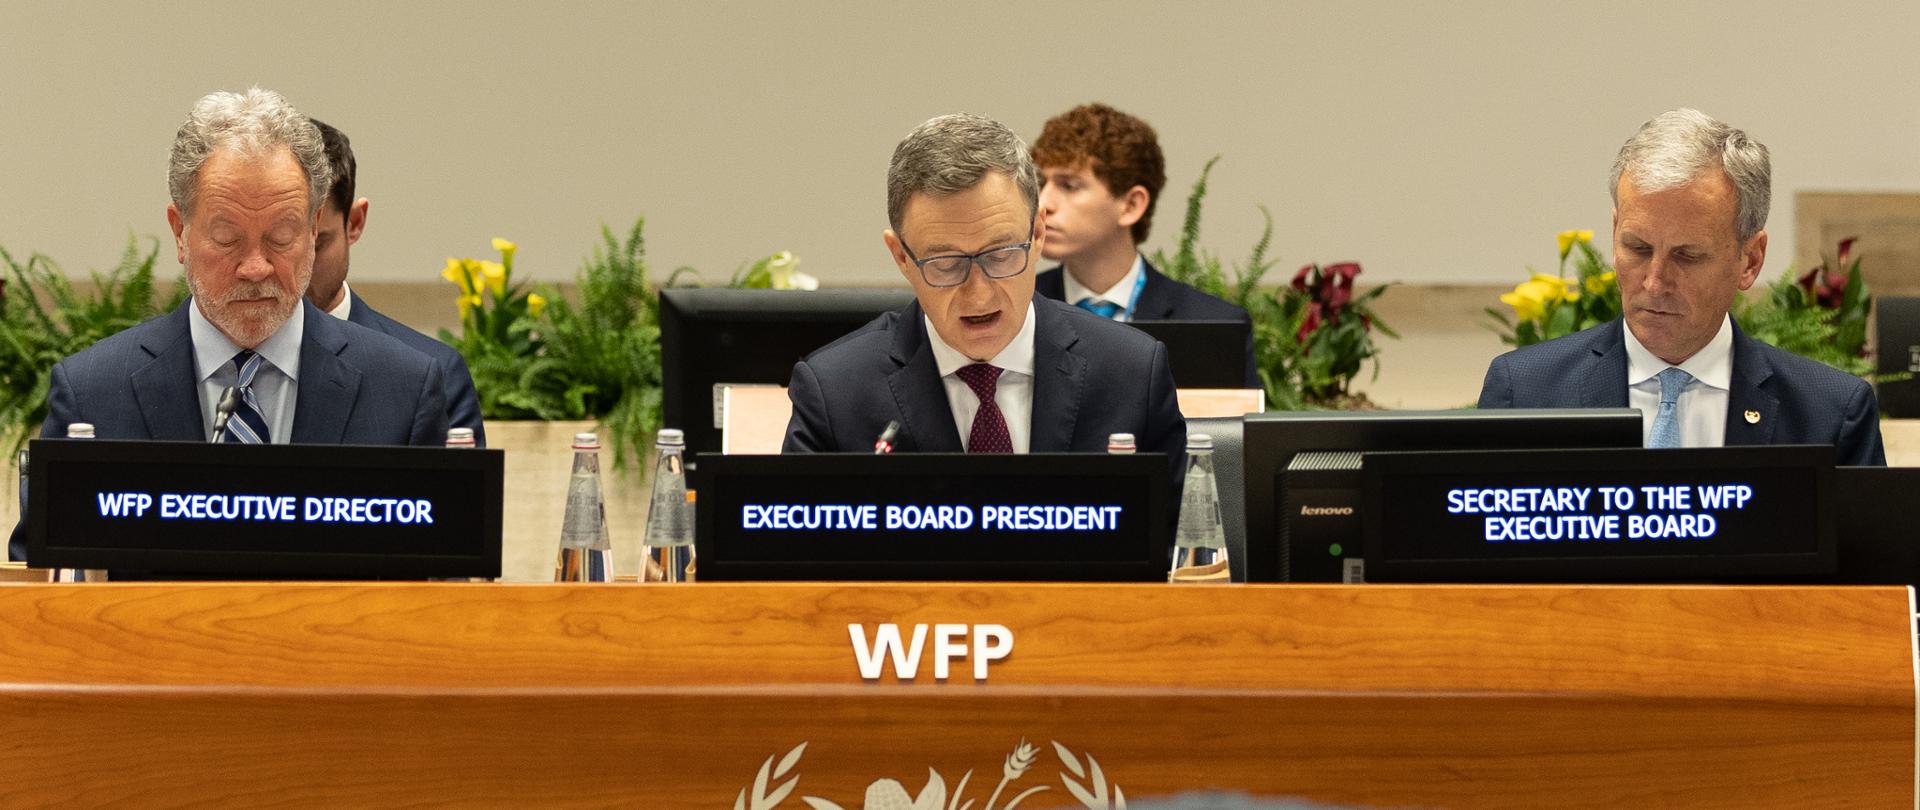 Ambasador Artur Pollok Prezydentem Rady Zarządzającej WFP